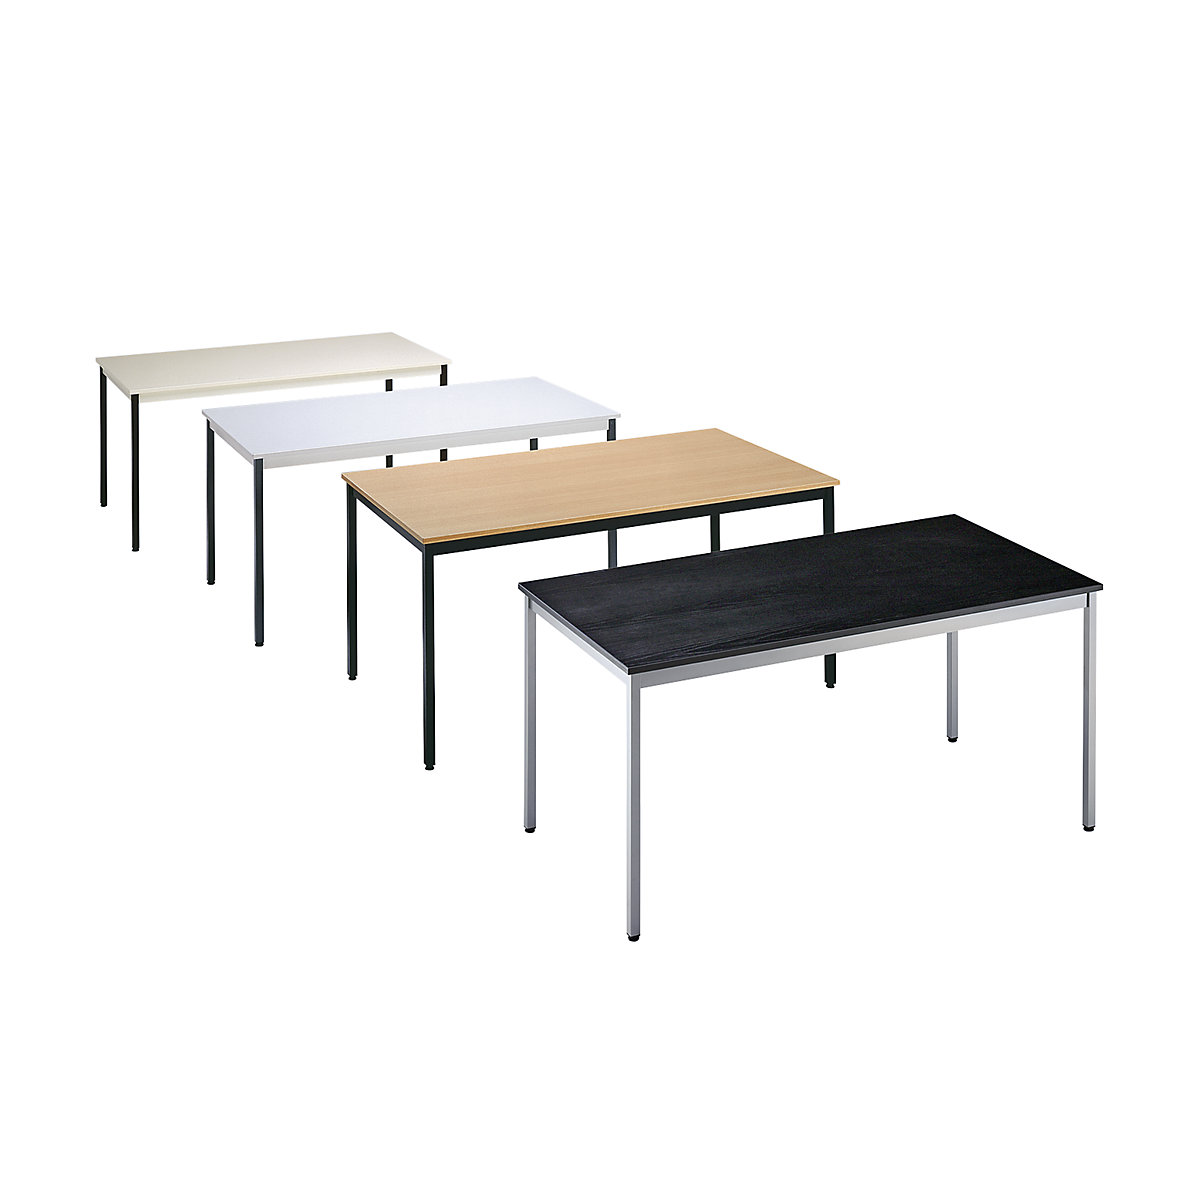 Table polyvalente – eurokraft basic, rectangulaire, l x h 1400 x 740 mm, profondeur 700 mm, plateau gris clair, piétement gris basalte-1